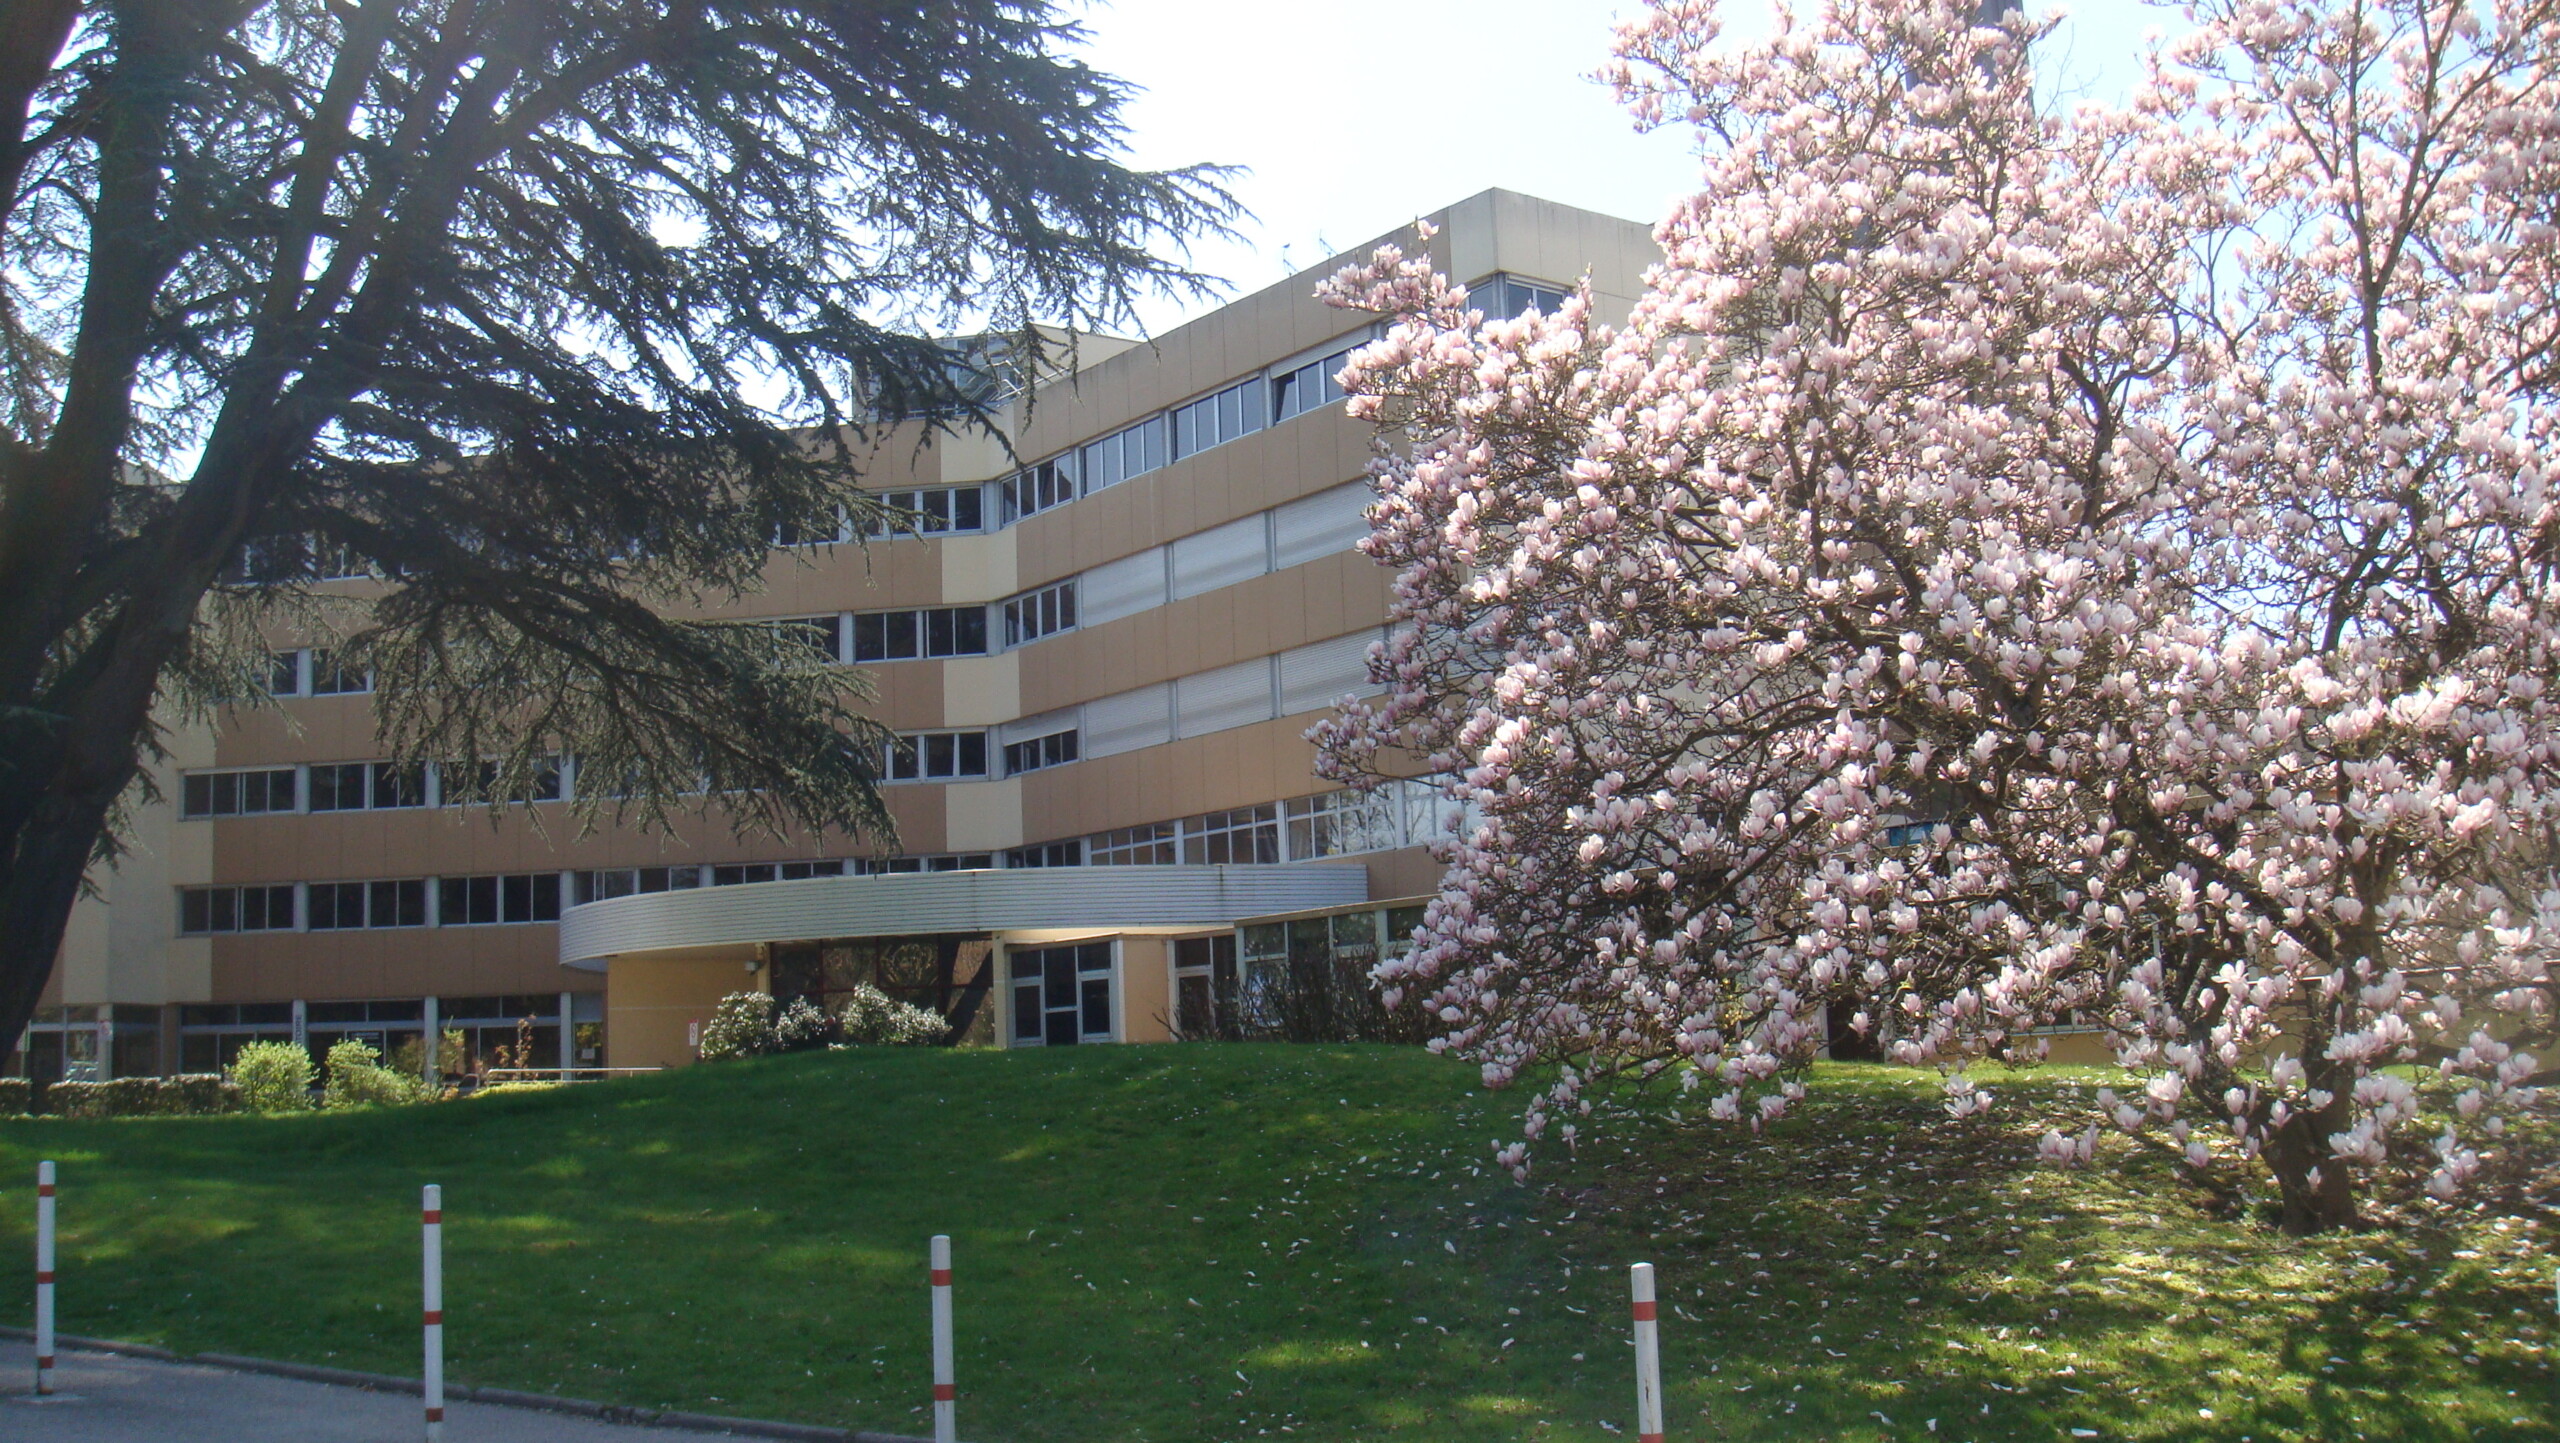 Photo de la clinique avec un magnolia en fleurs